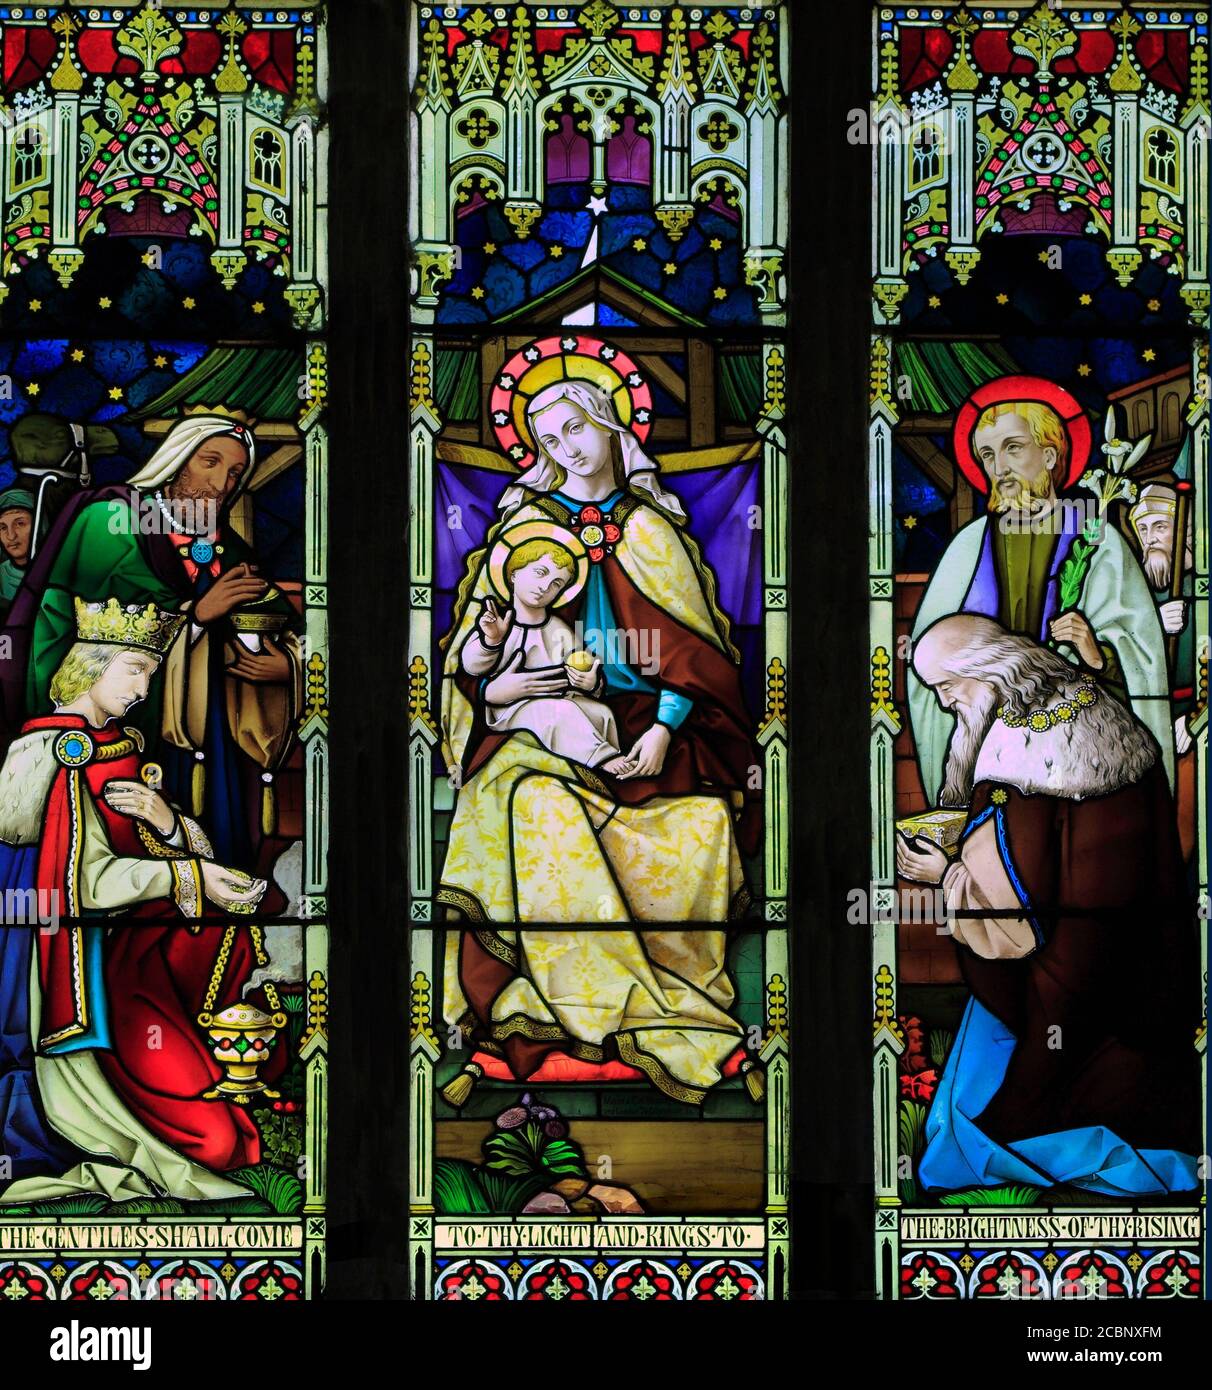 Epiphany, Three Kings, Wise Men, vitrail, fenêtre, Noël, par Mayer & Co. 1873, Brinton, Norfolk, Angleterre, Royaume-Uni Banque D'Images